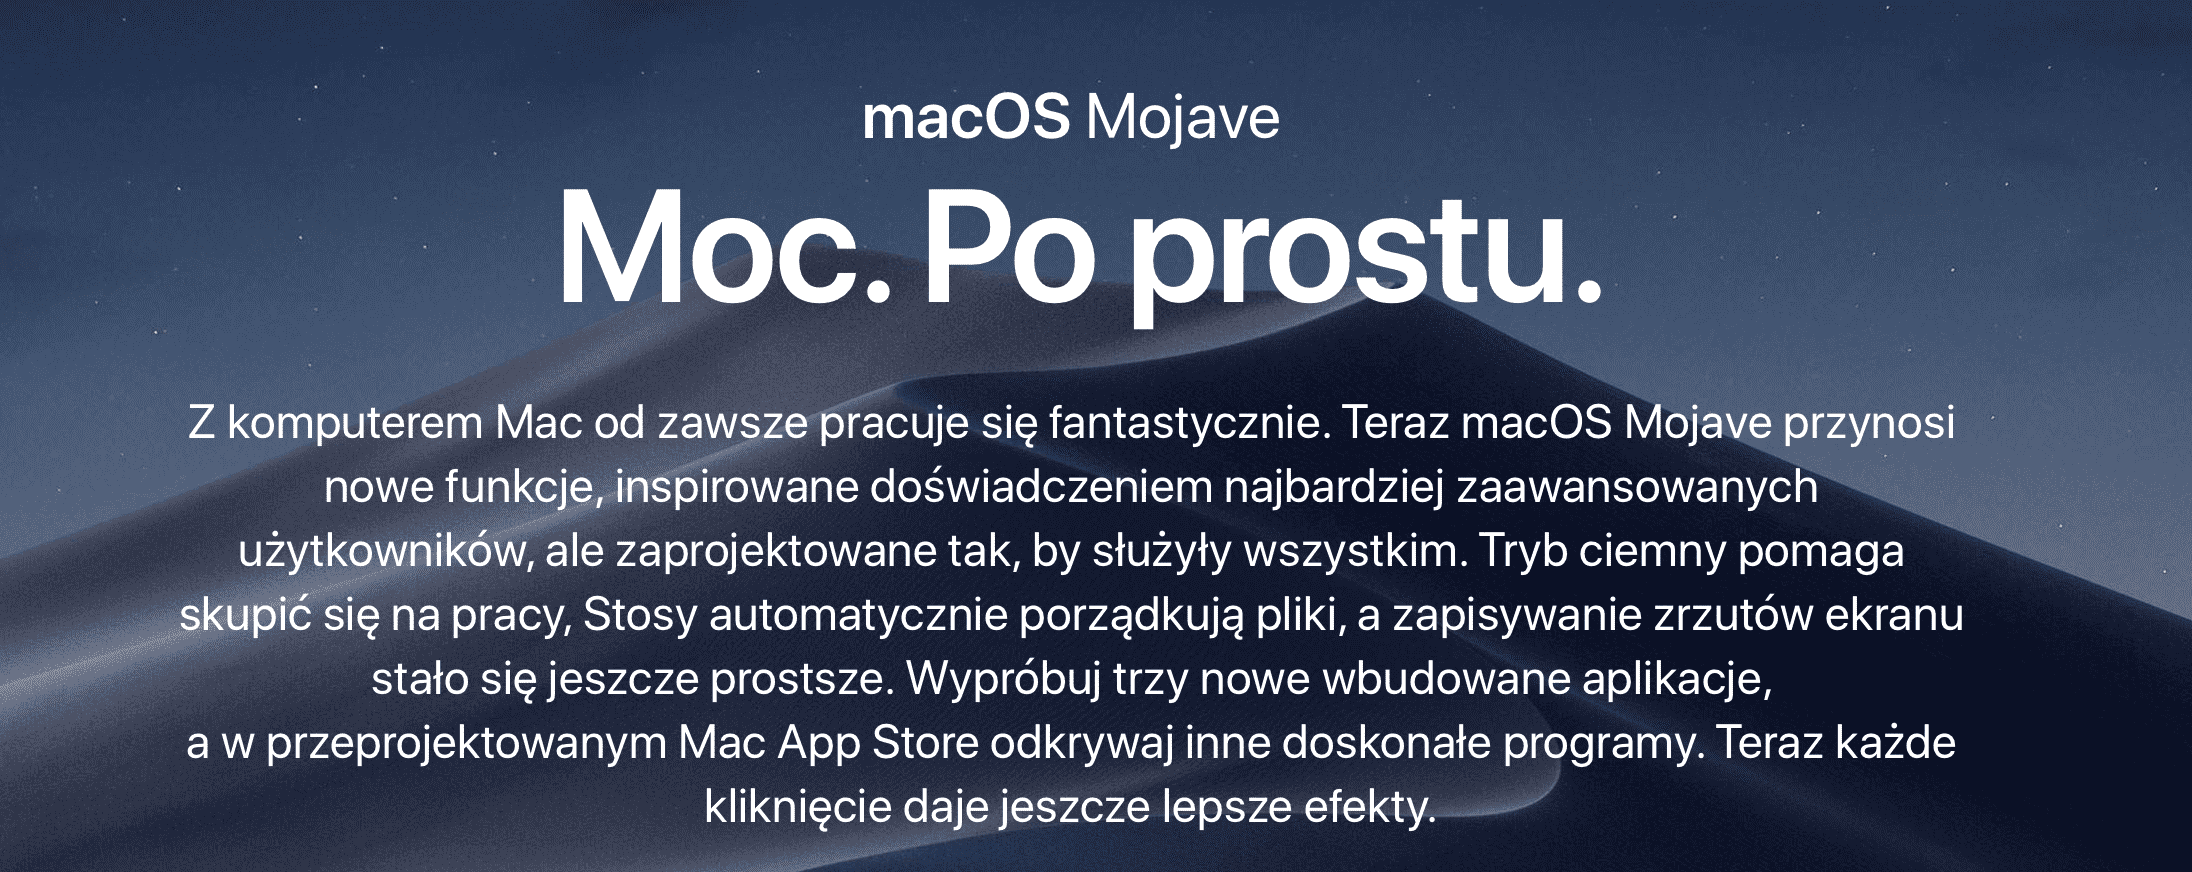 MacOS 10.14.3 dostępny dla wszystkich polecane, ciekawostki macos mojave, lista zmian w macOS Mojave, lista zmian, Apple  Wczoraj wieczorem oprócz iOS 12.1.3, Apple udostępniło także wszystkim użytkownikom macOS 10.14.3 Mojave. Co zostało zmienione w udostępnionej wersji? mojave 1